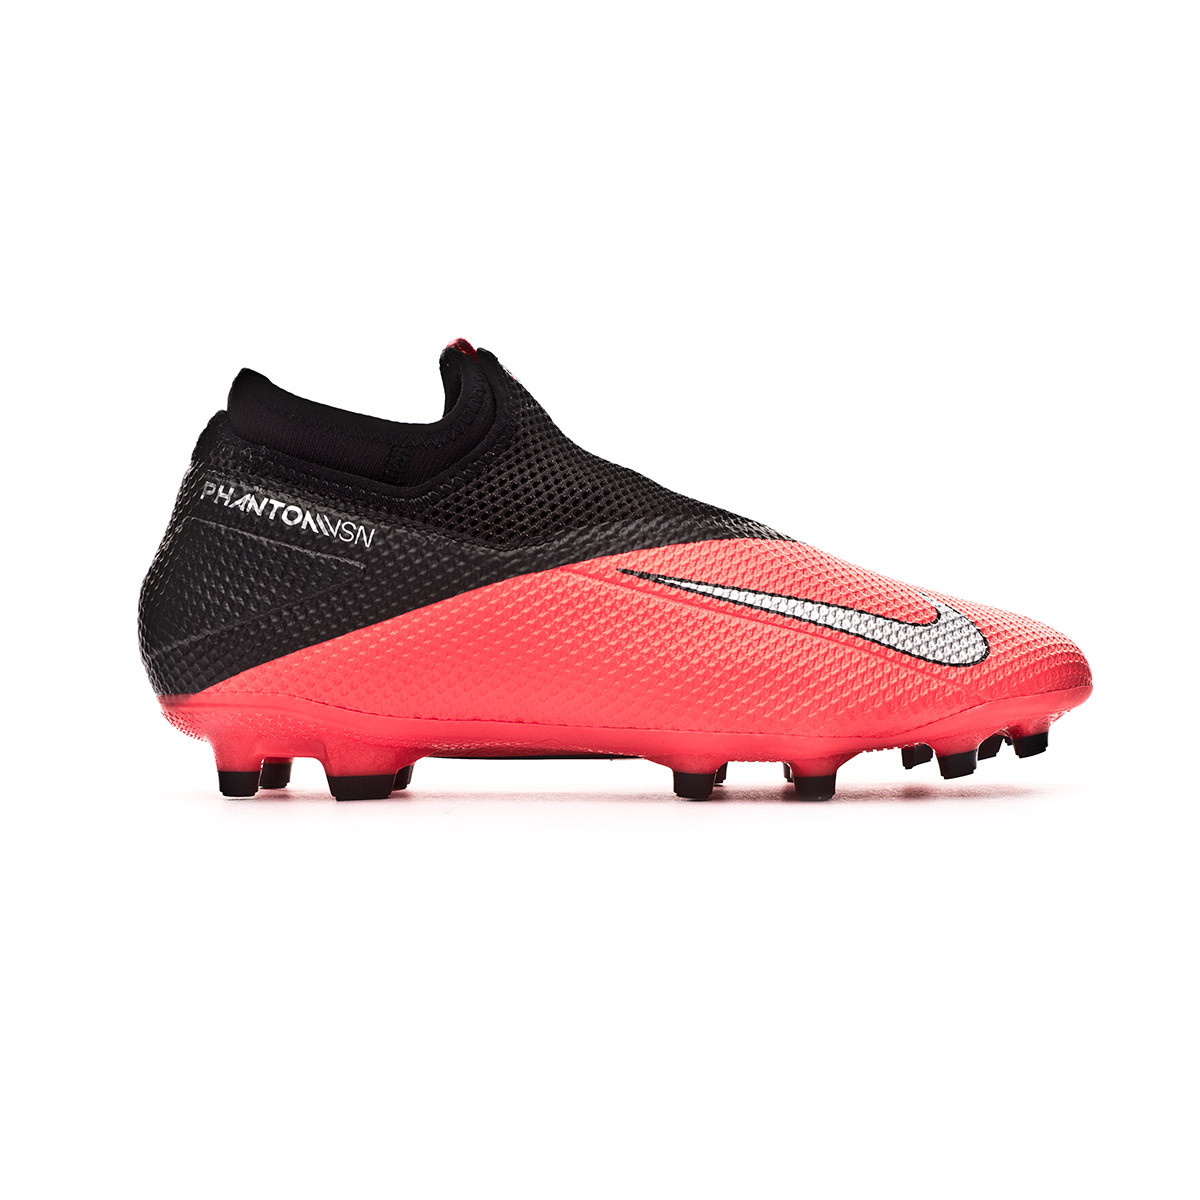 Nike Phantom Vision Football Boots at SportsDirect.com Serbia